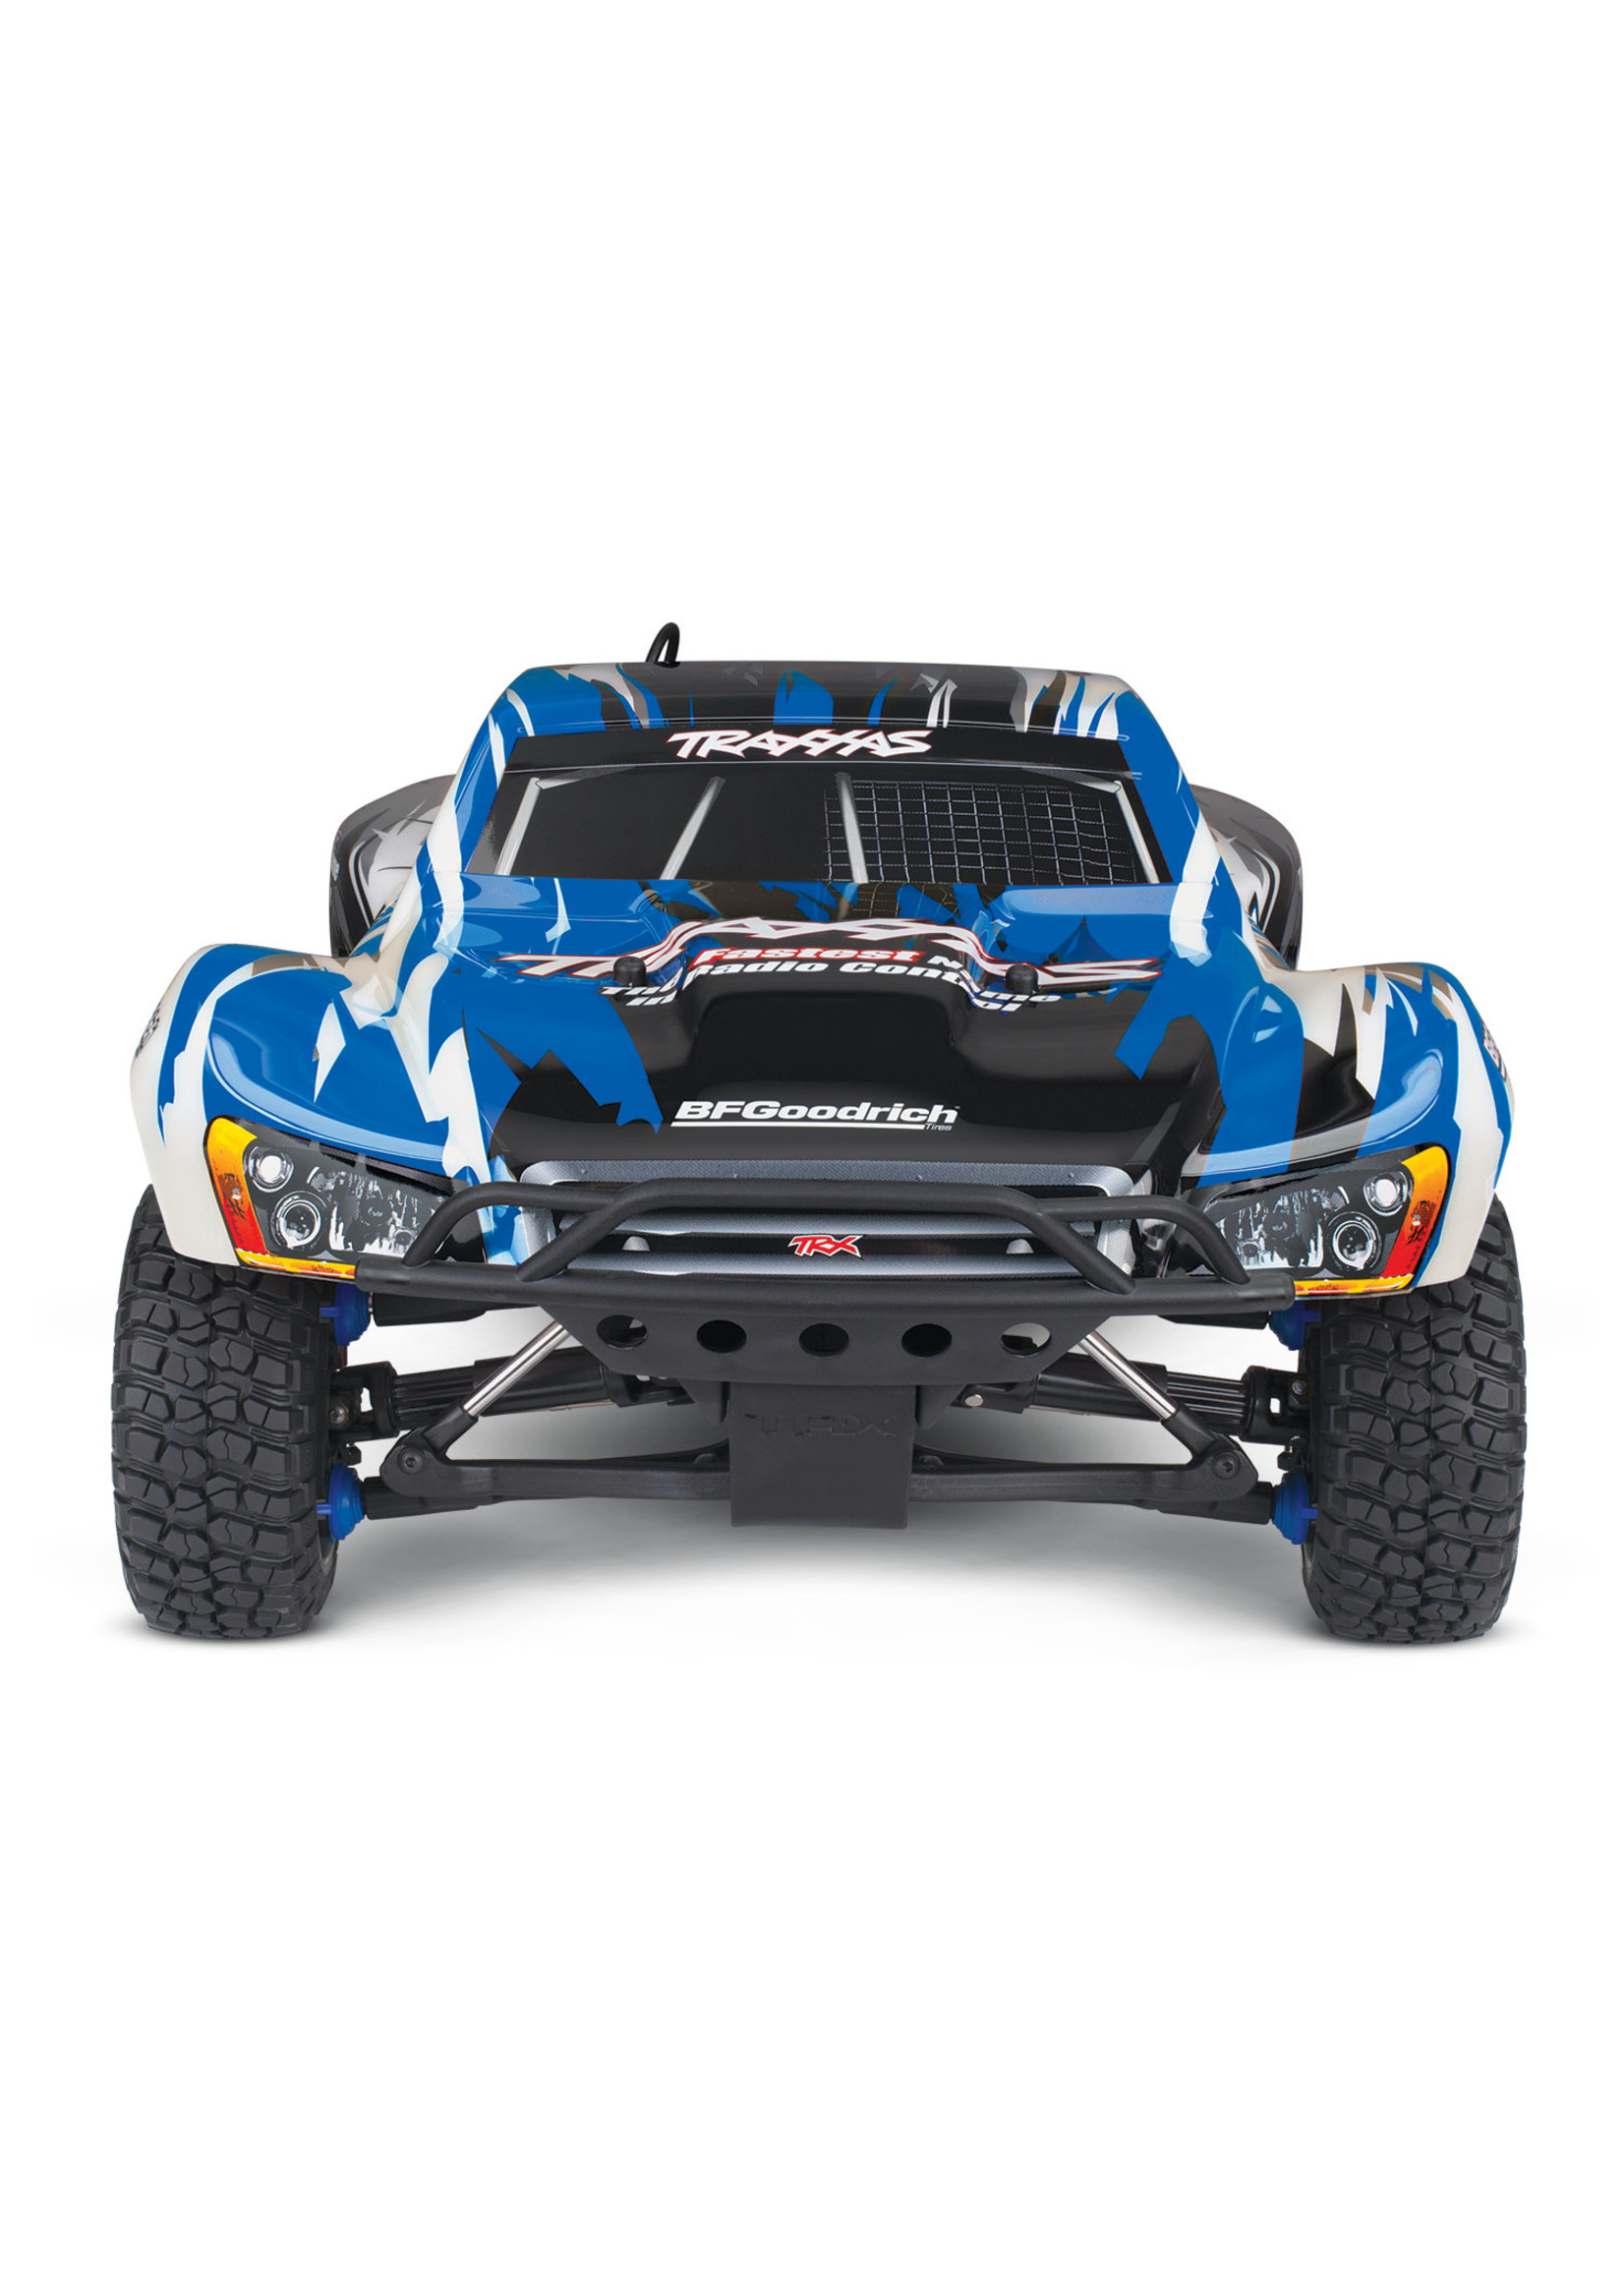 Traxxas 1/10 Slayer Pro 4X4 Nitro Short Course Race Truck - Blue